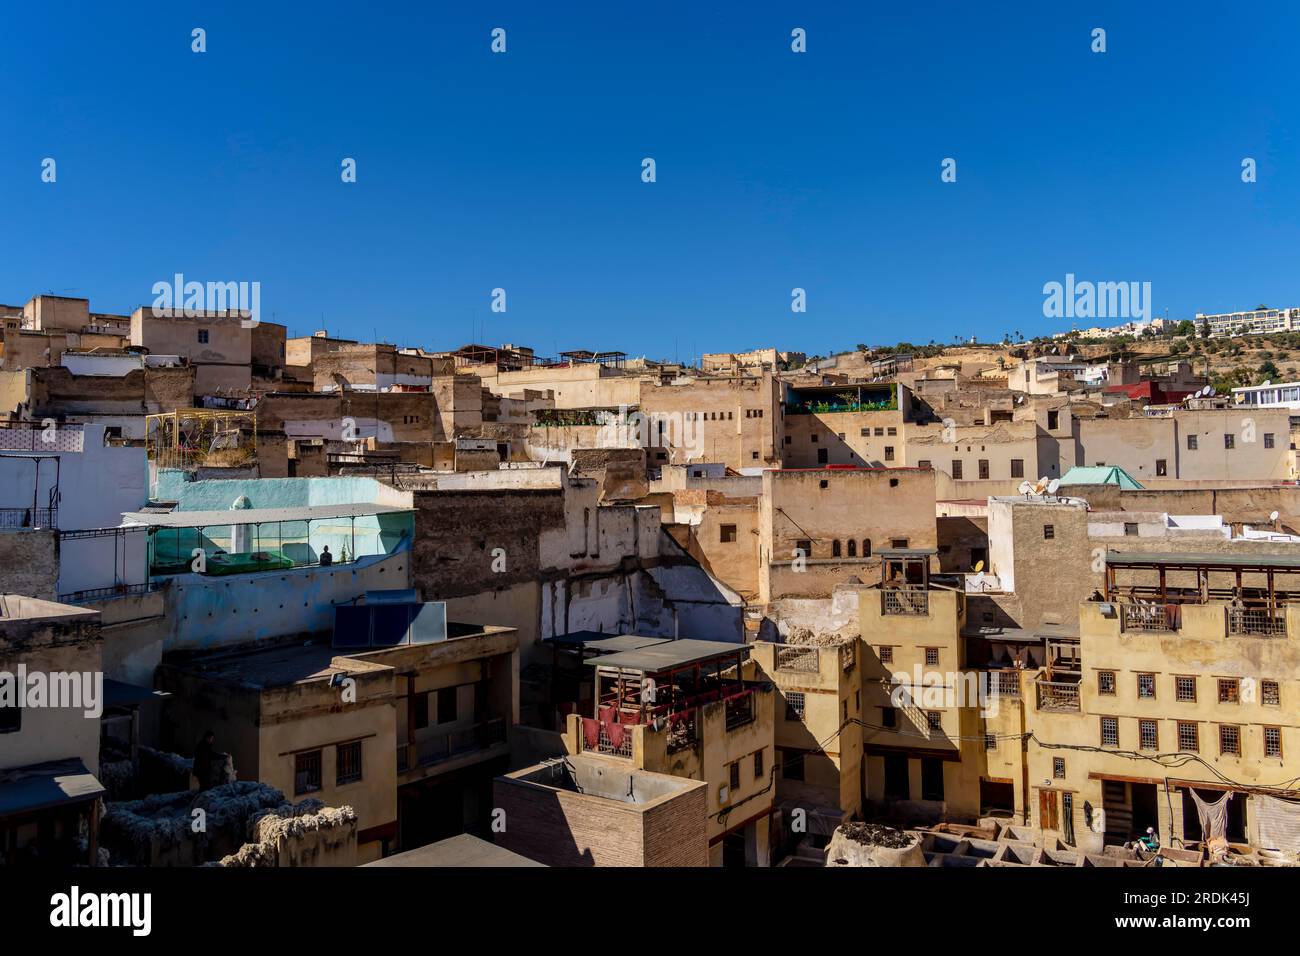 Fès ou Fès est une ville du nord du Maroc et la capitale de la région administrative de Fès-Meknes Banque D'Images